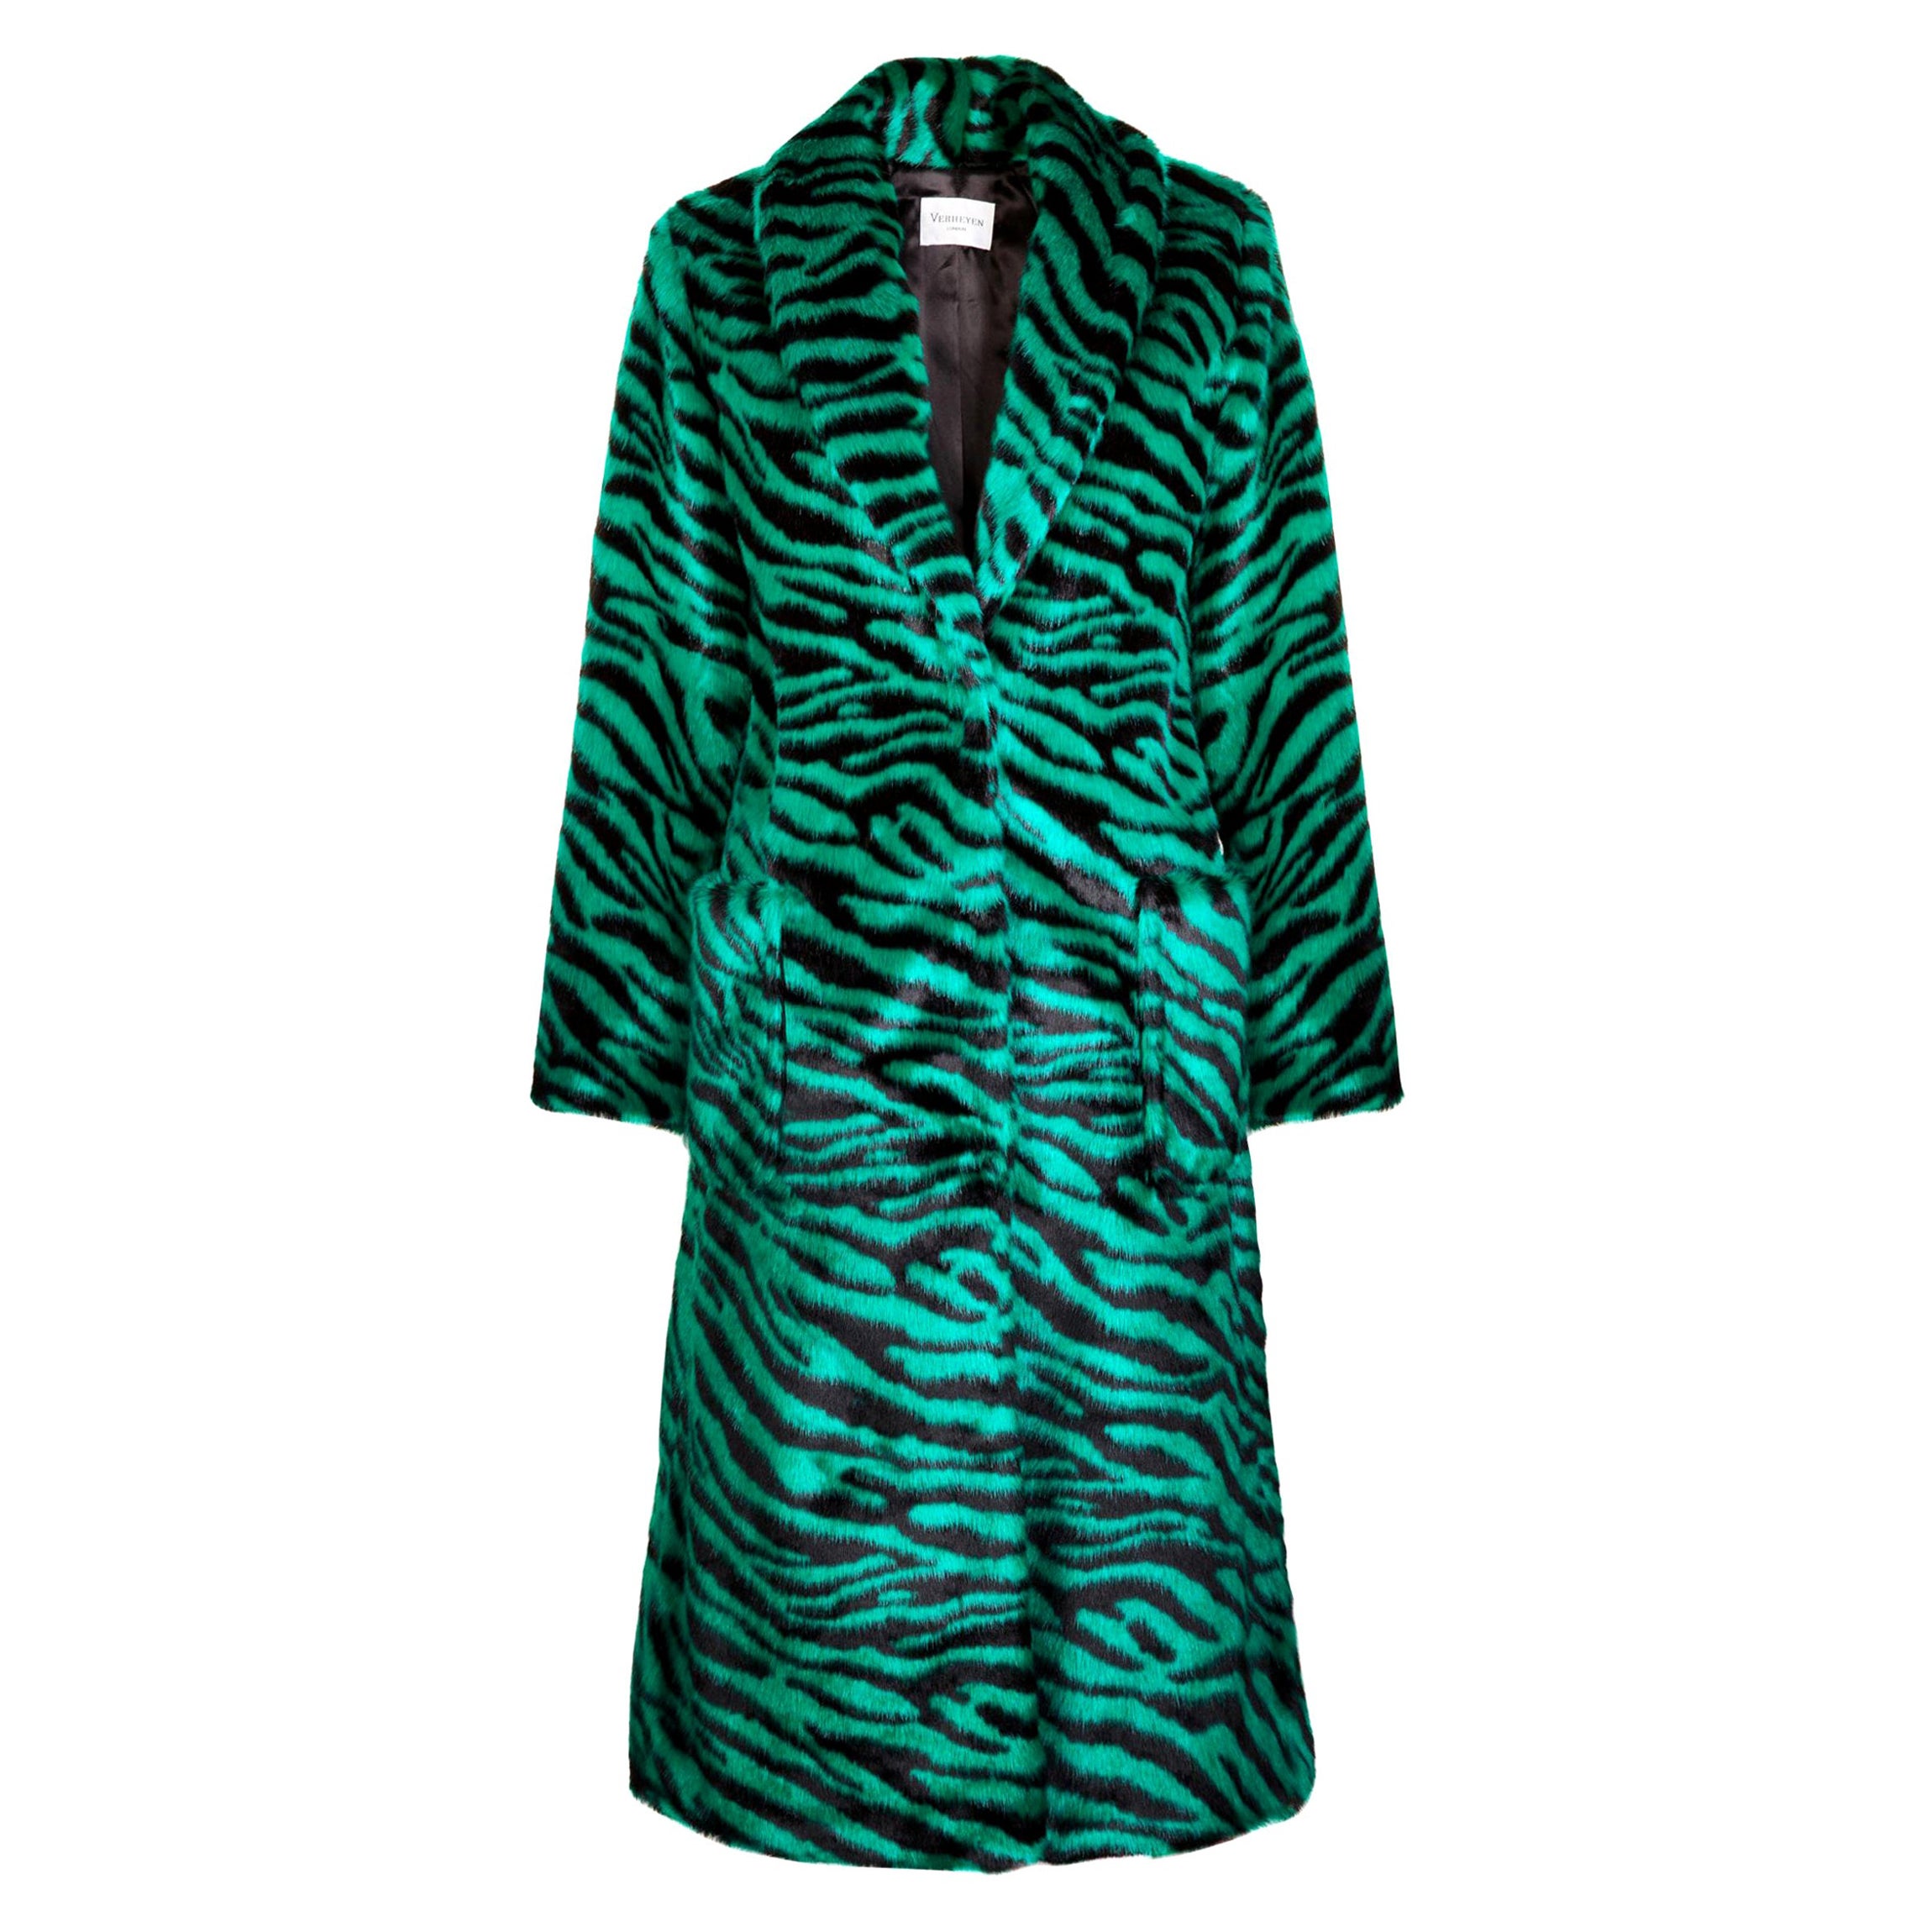 Verheyen London Esmeralda Faux Fur Coat in Emerald Green Zebra Print size uk 10